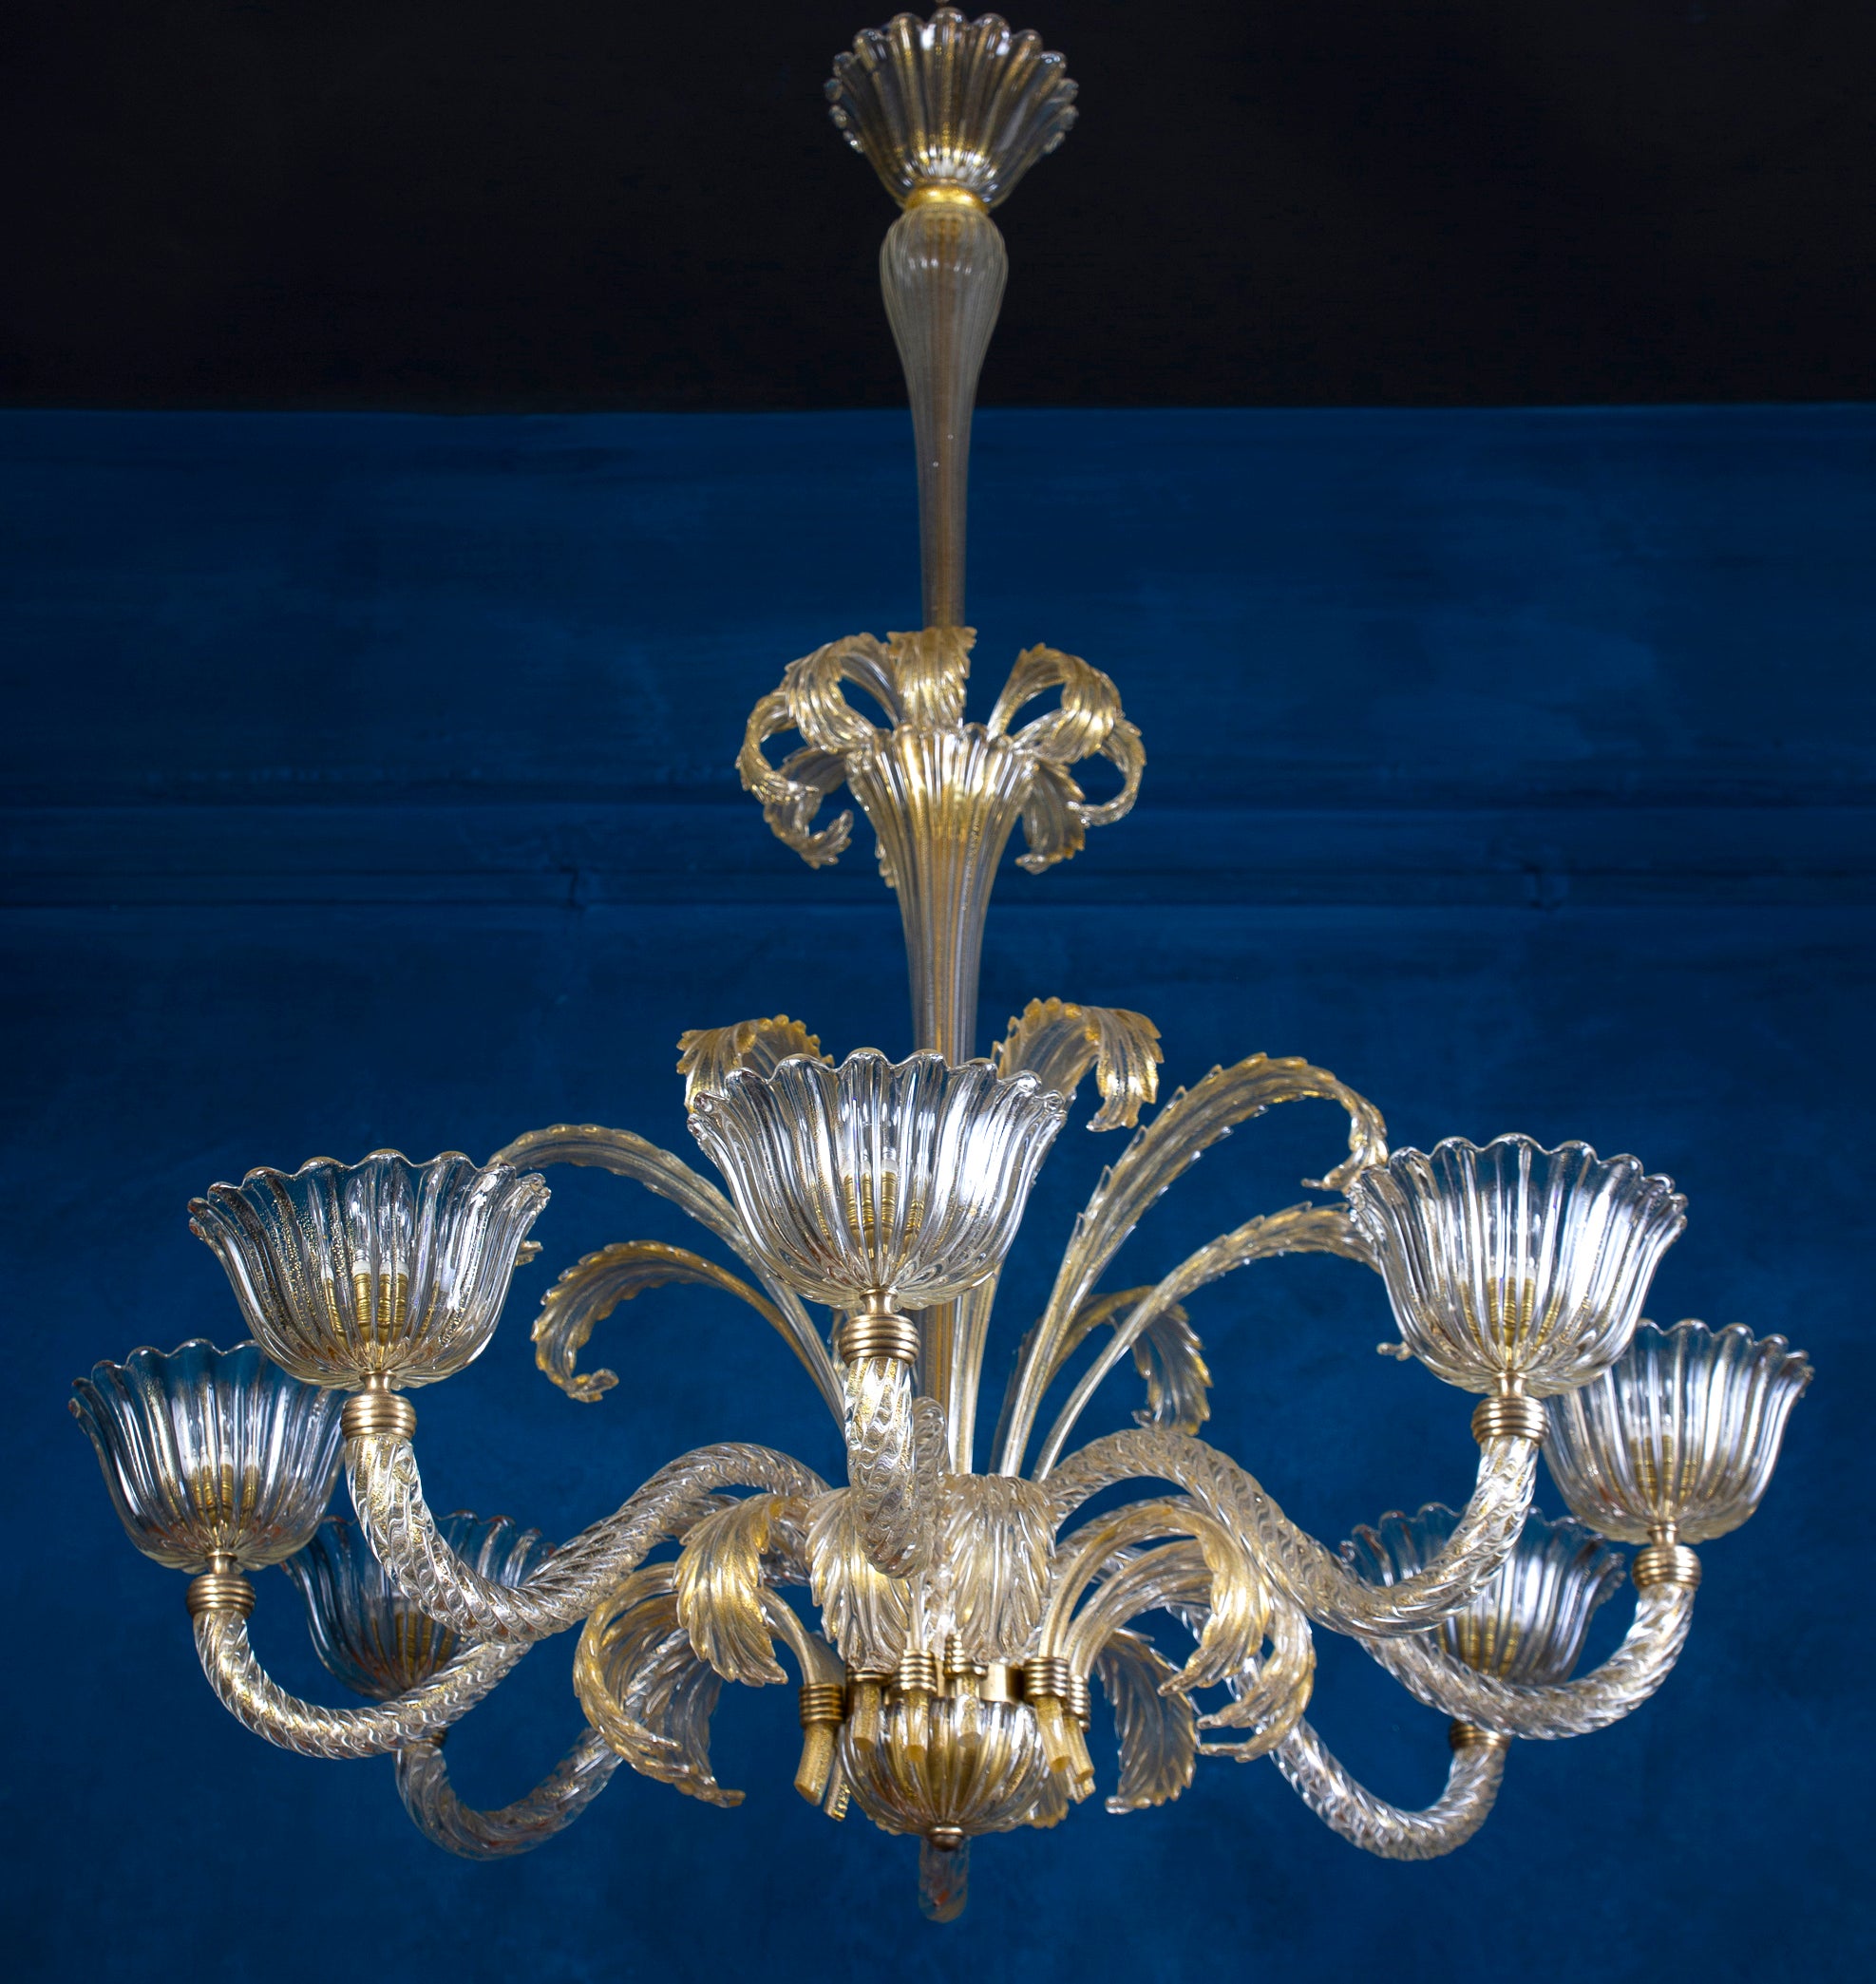 Außergewöhnlicher Kronleuchter aus Murano-Glas mit acht Schirmen und Goldeinlage . Elegant geformt feine Qualität  Messinghalterung von Ercole Barovier.  Einzigartige Art-Déco-Schönheit in hervorragendem Vintage-Zustand.
Acht  E 27-Glühbirnen, die